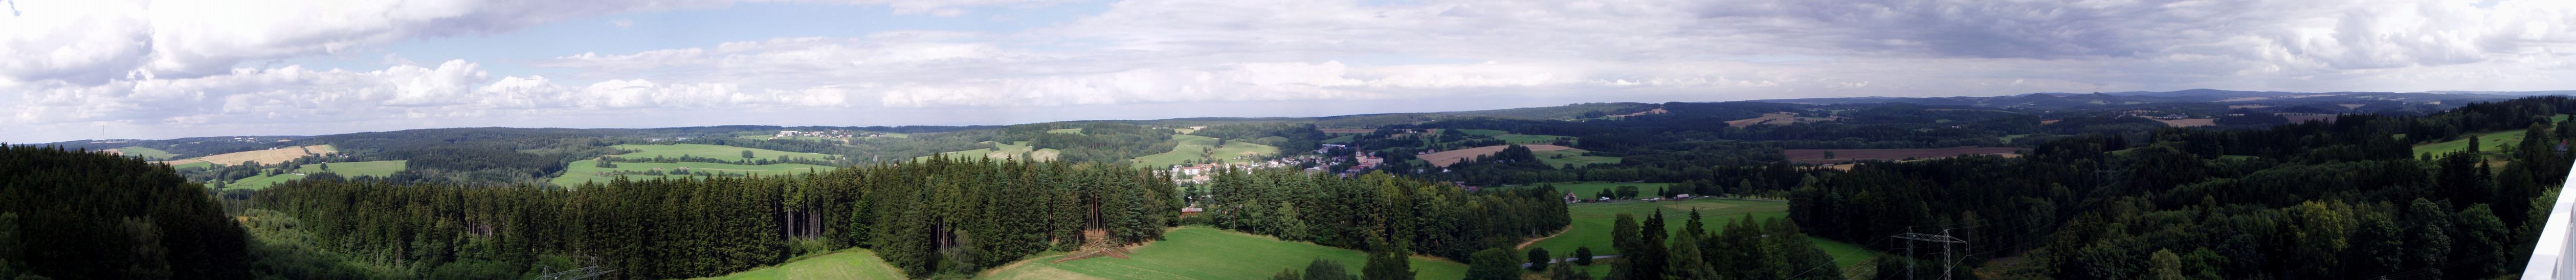 Panoramatický pohled ze zuberské rozhledny